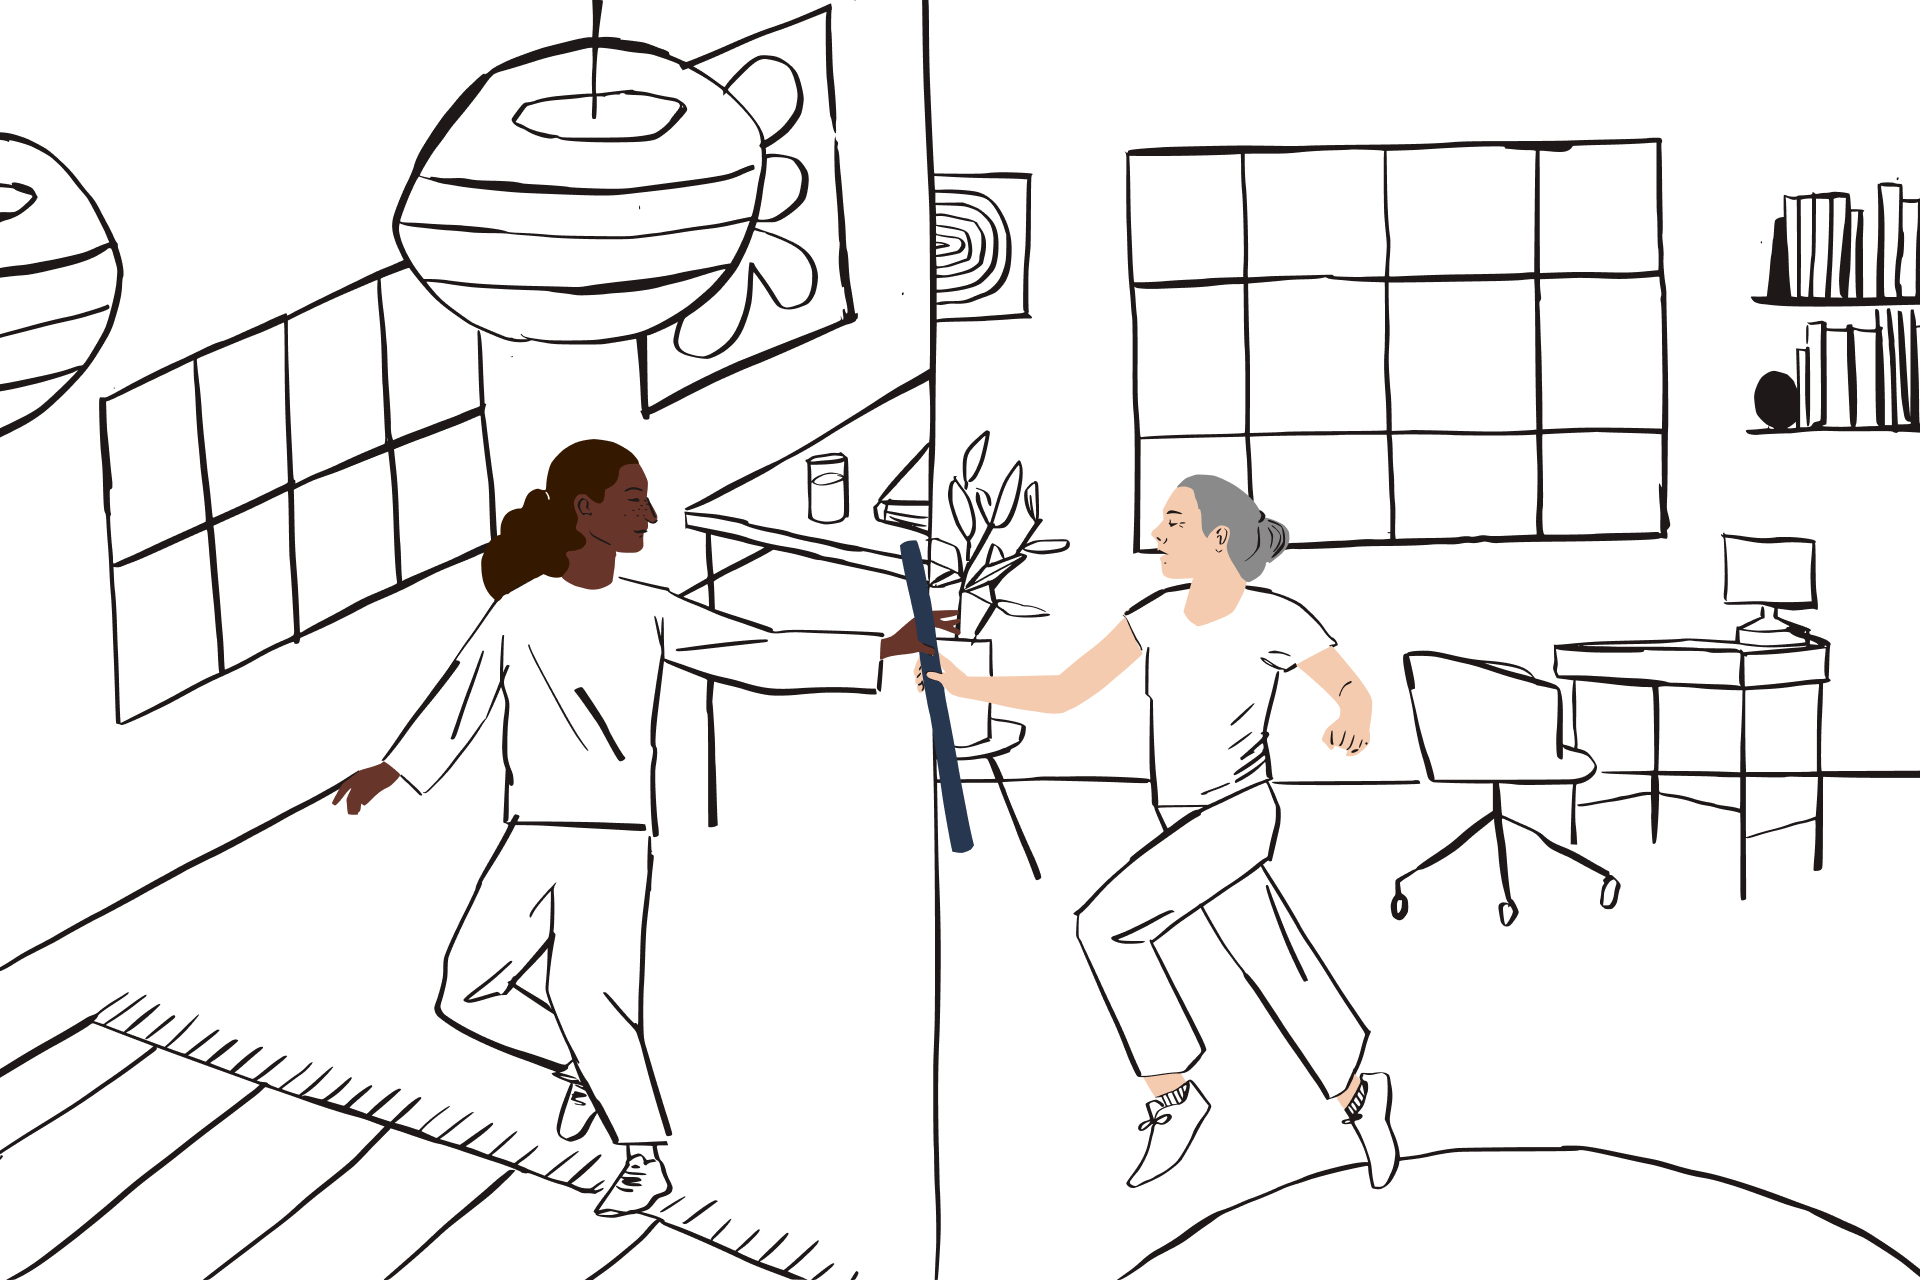 Linjeillustration av en person som skickar en stafettpinne från en ram i hemmakontoret till en person i ett annat utrymme